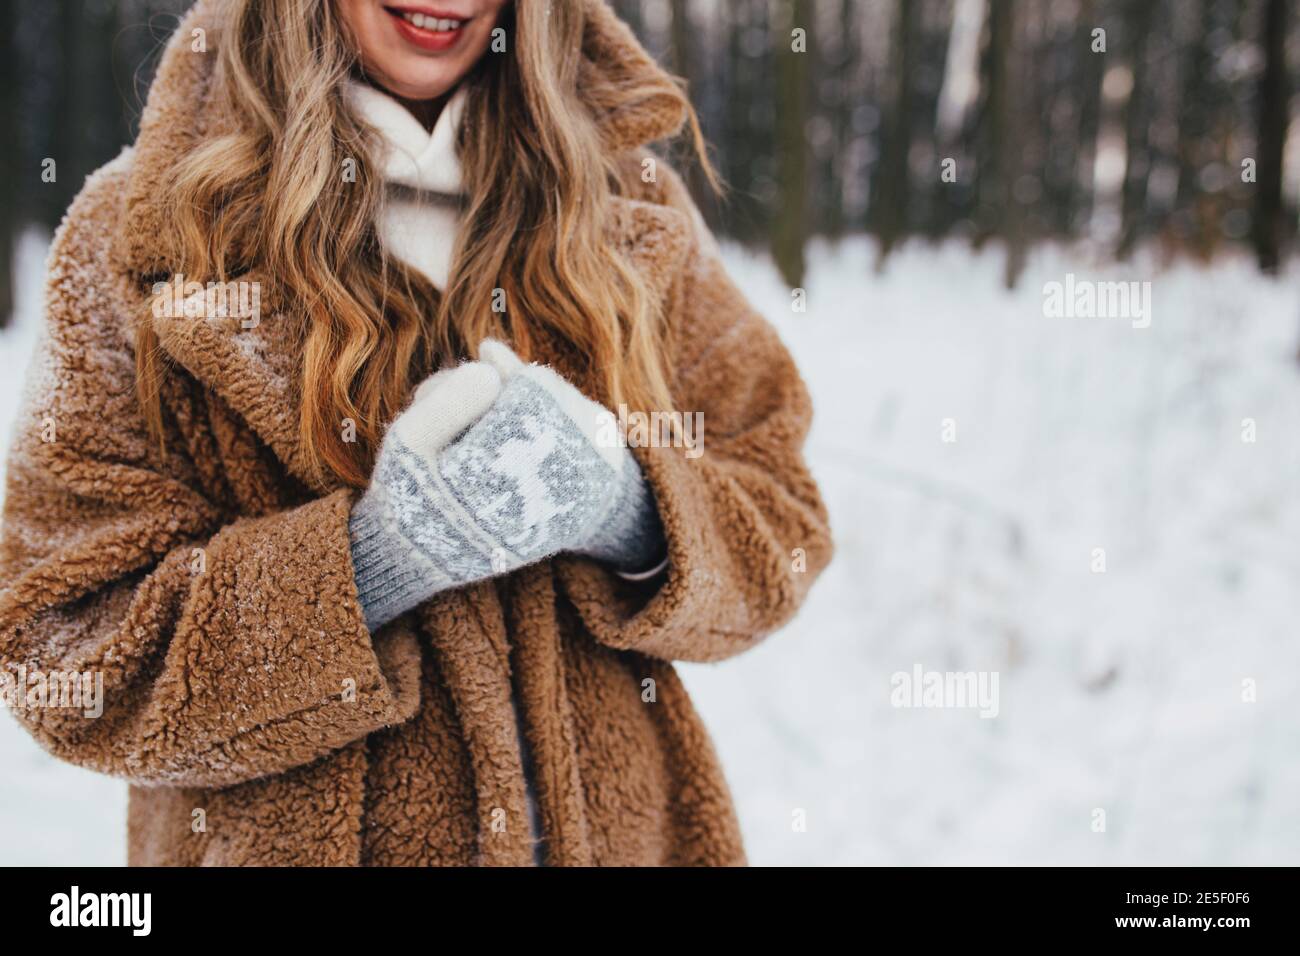 Jeune femme en fourrure, gants et foulard dans une forêt enneigée. Arrière-plan flou Banque D'Images